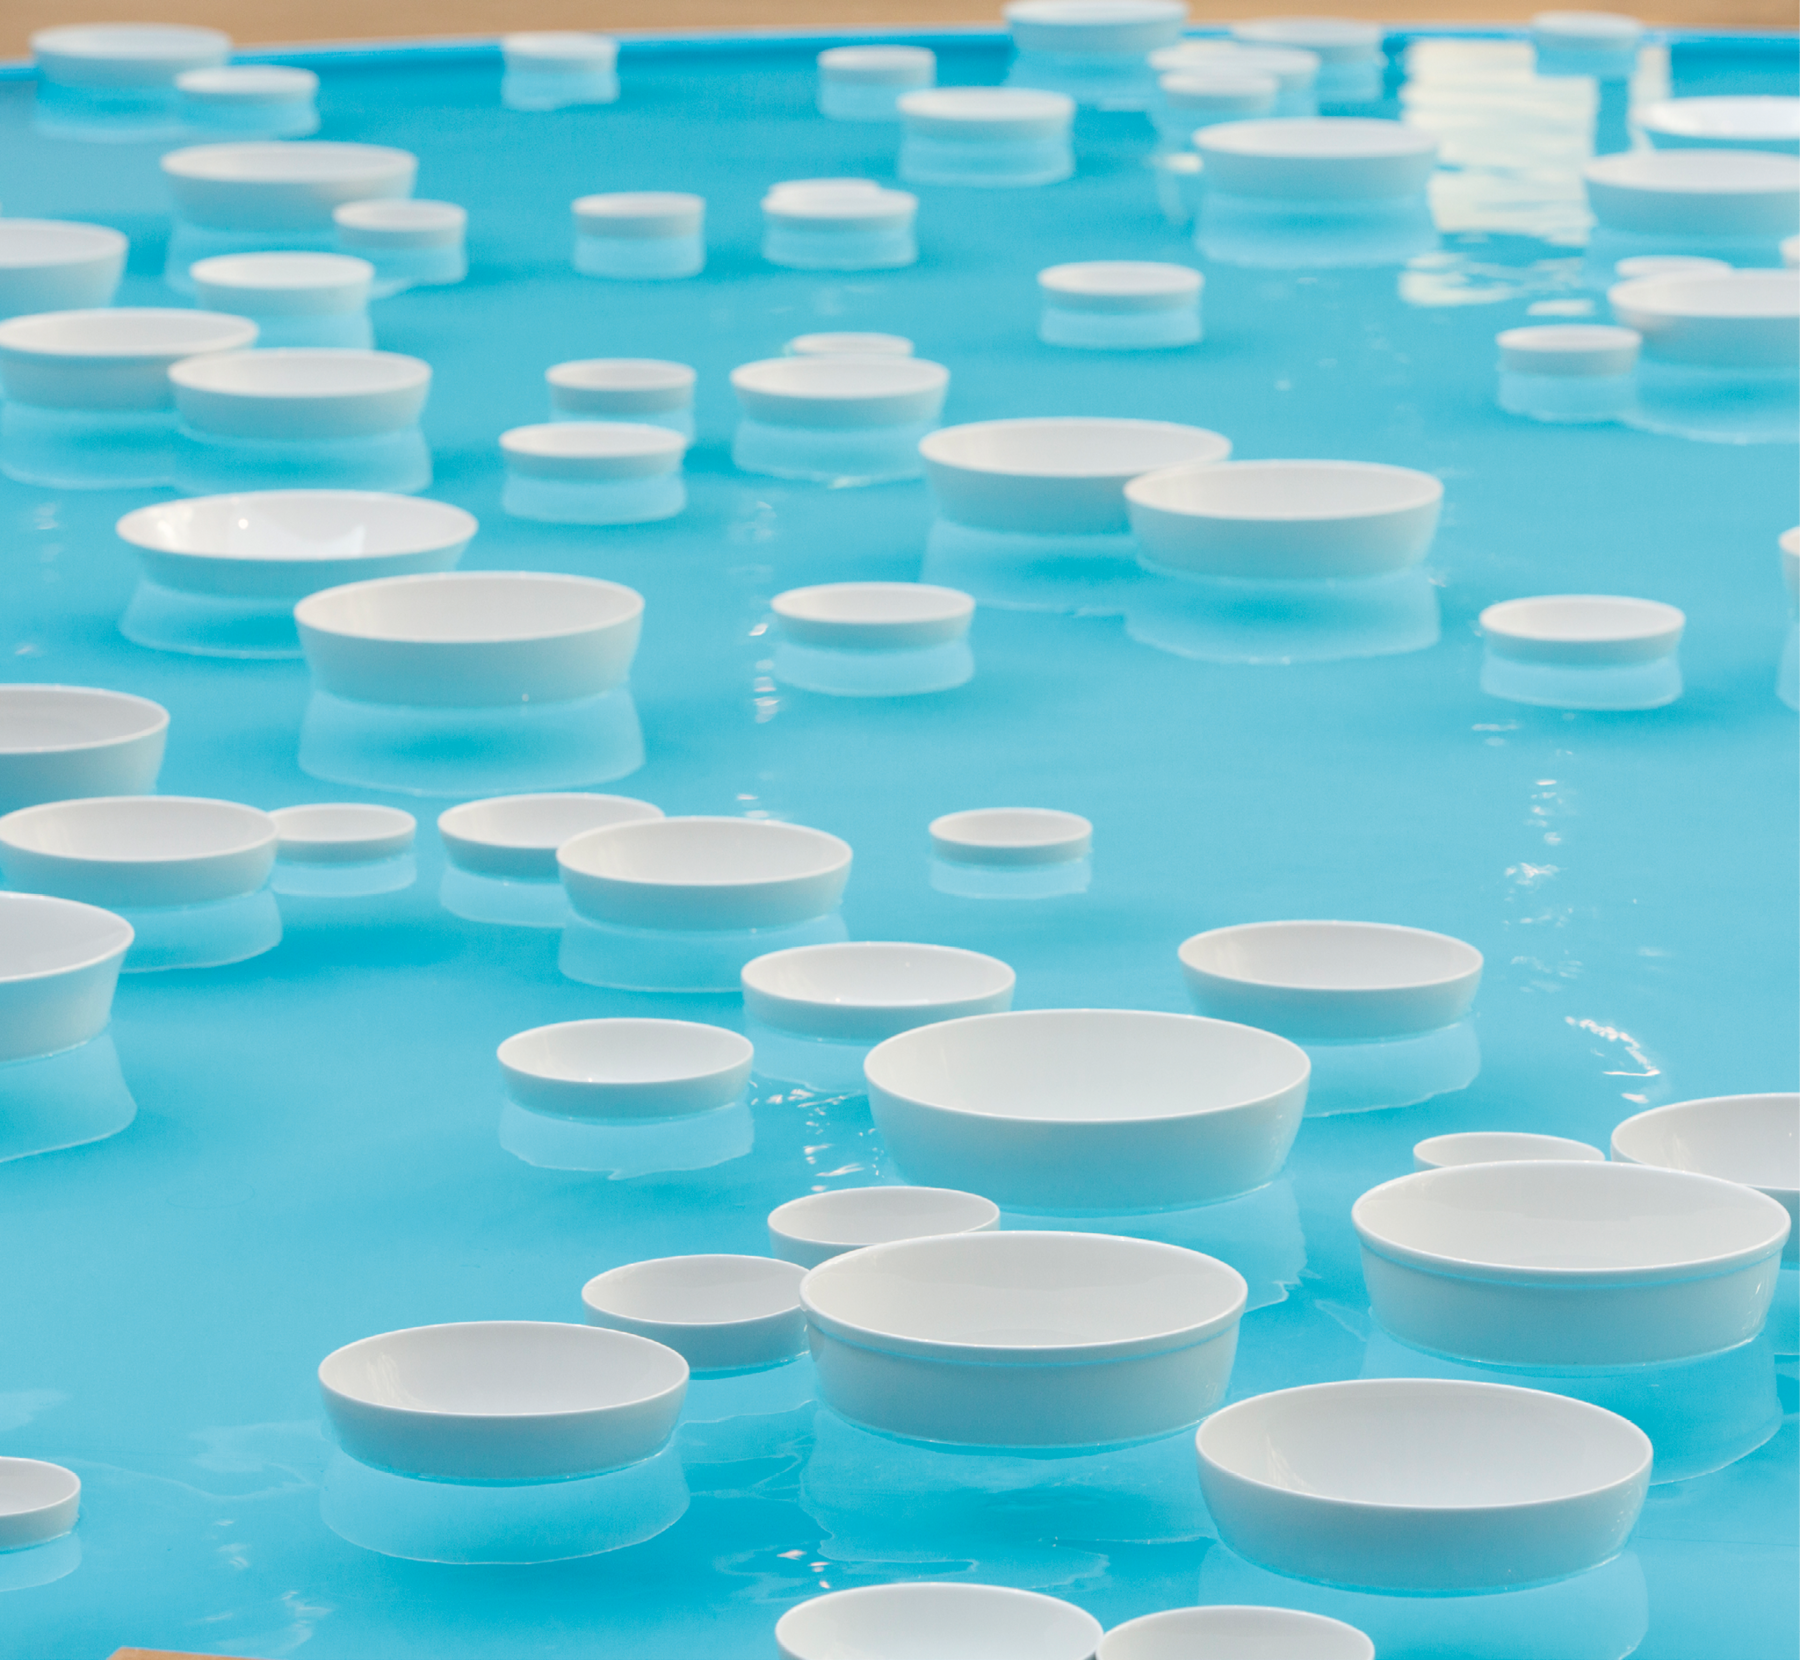 Fotografia. Diversos potes brancos vazios, de tamanhos diferentes, flutuam na superfície da água límpida que preenche um tanque de fundo azul e que reflete a imagem dos potes.